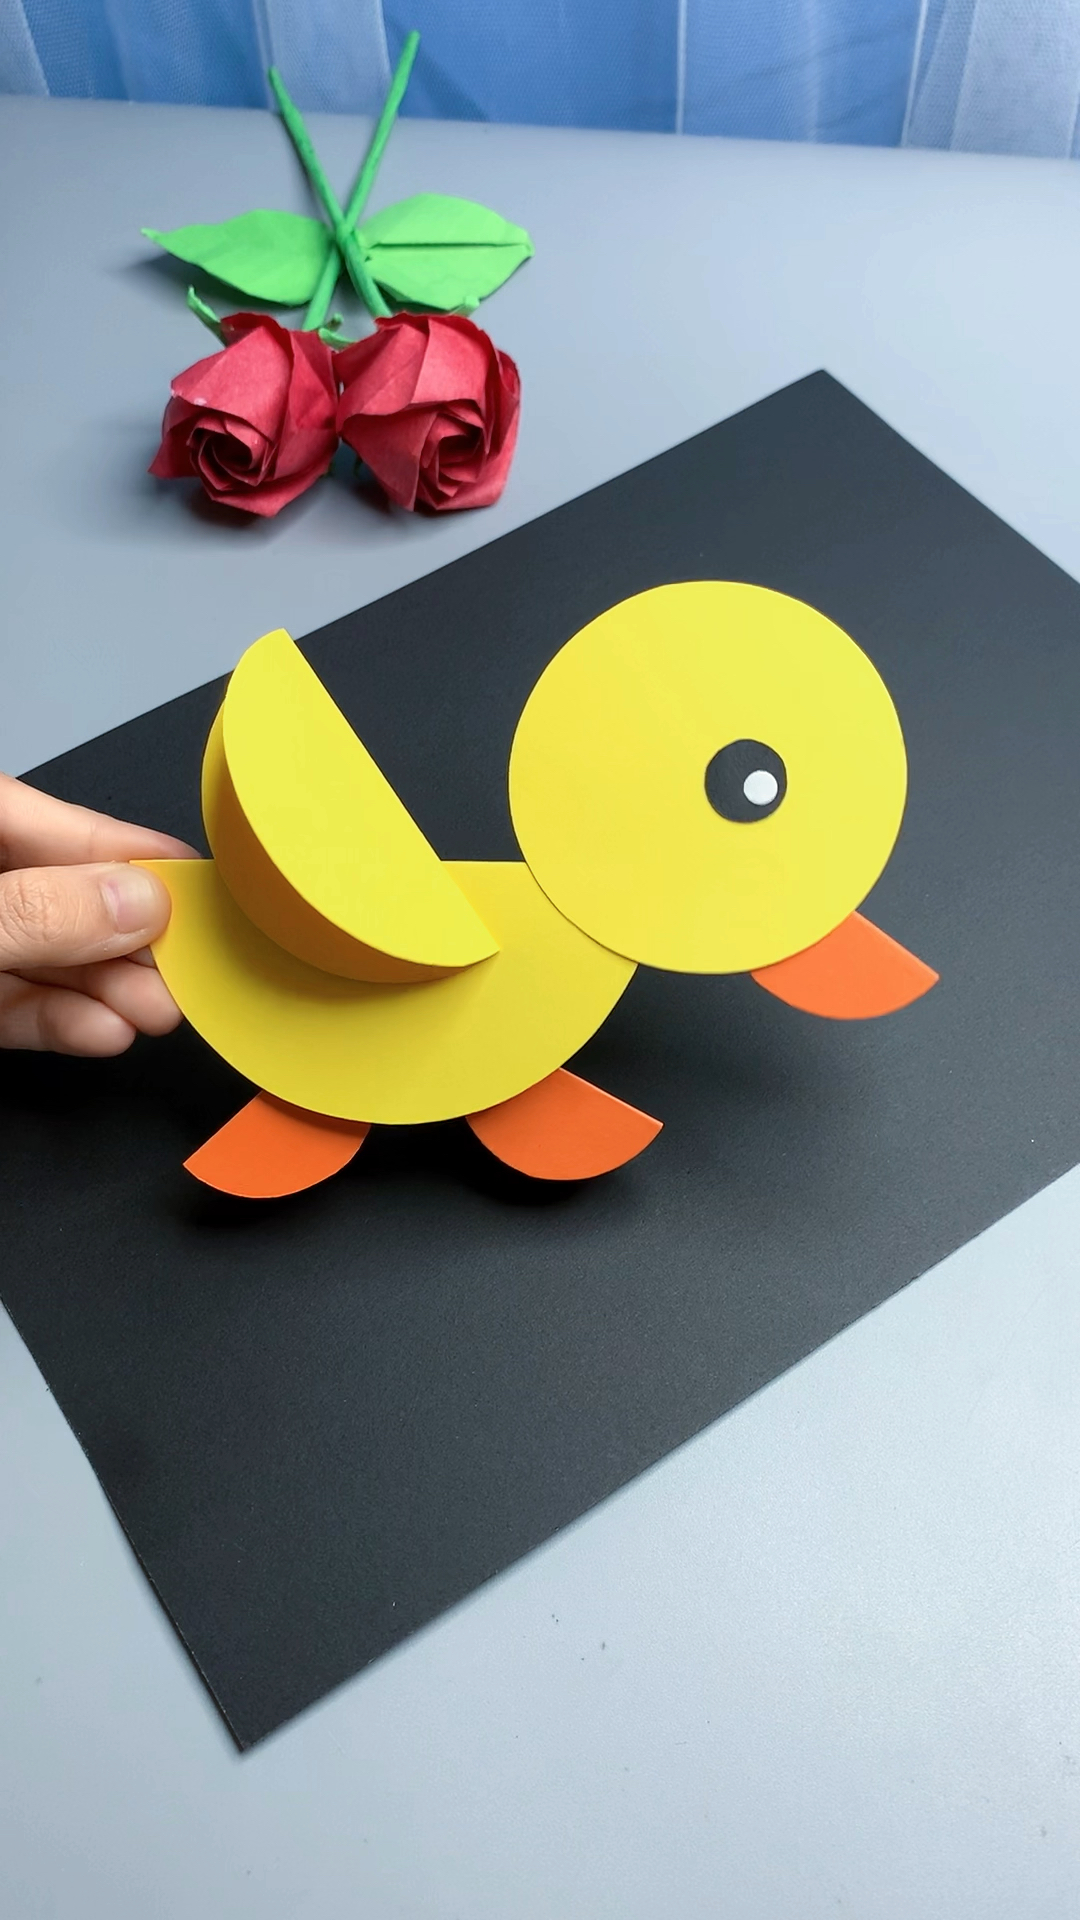 可爱的小鸭子剪贴画都是圆形贴出来的简单又有创意快试试